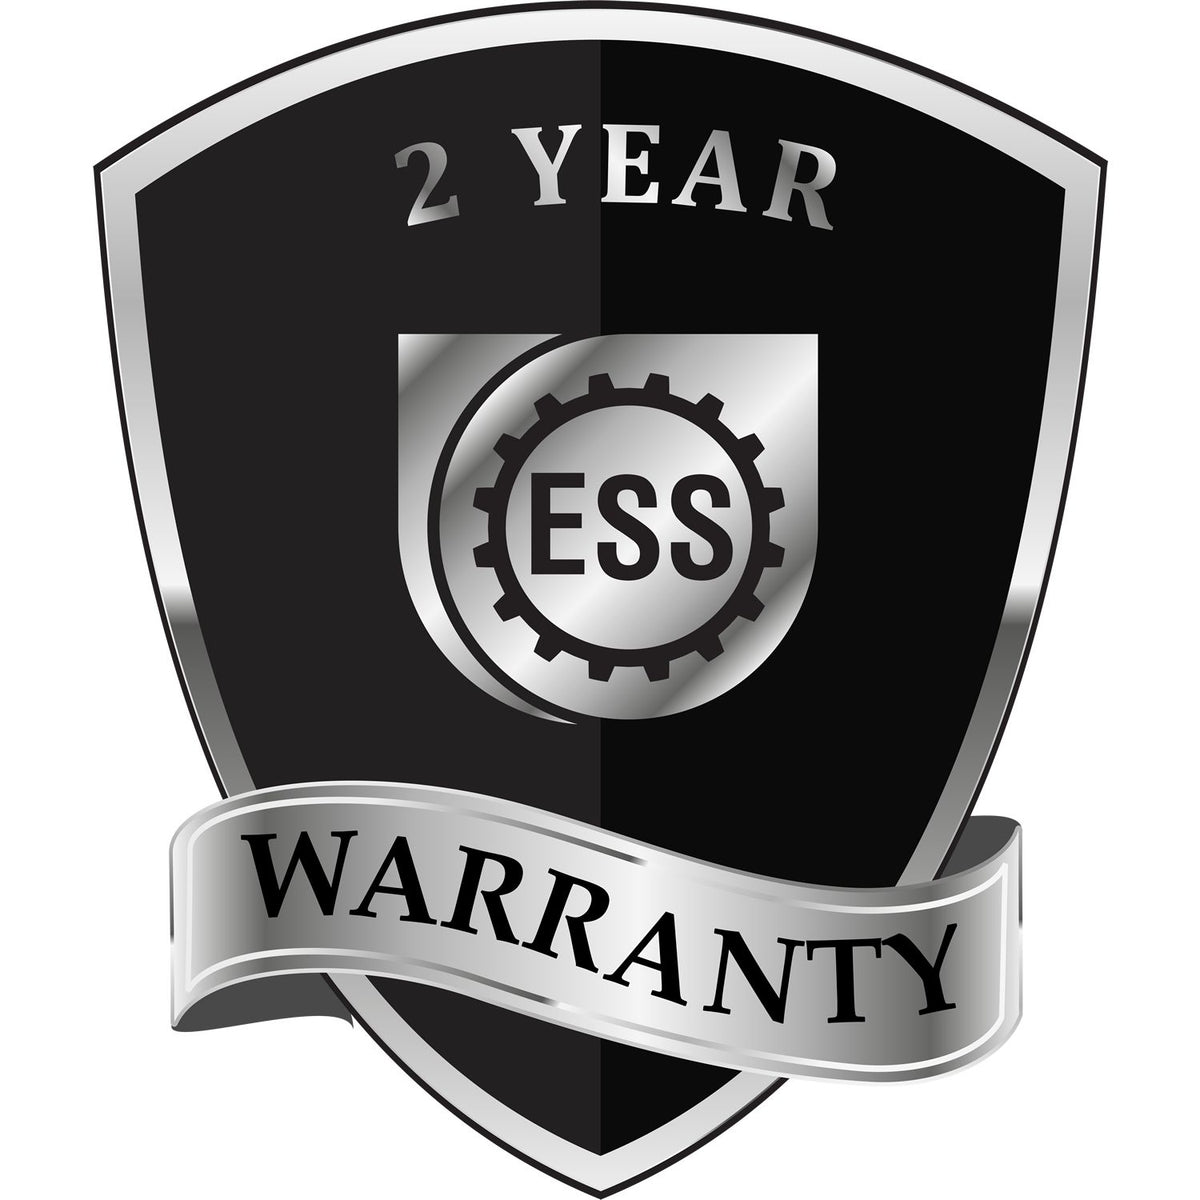 A black and silver badge or emblem showing warranty information for the Handheld Nebraska Professional Geologist Embosser